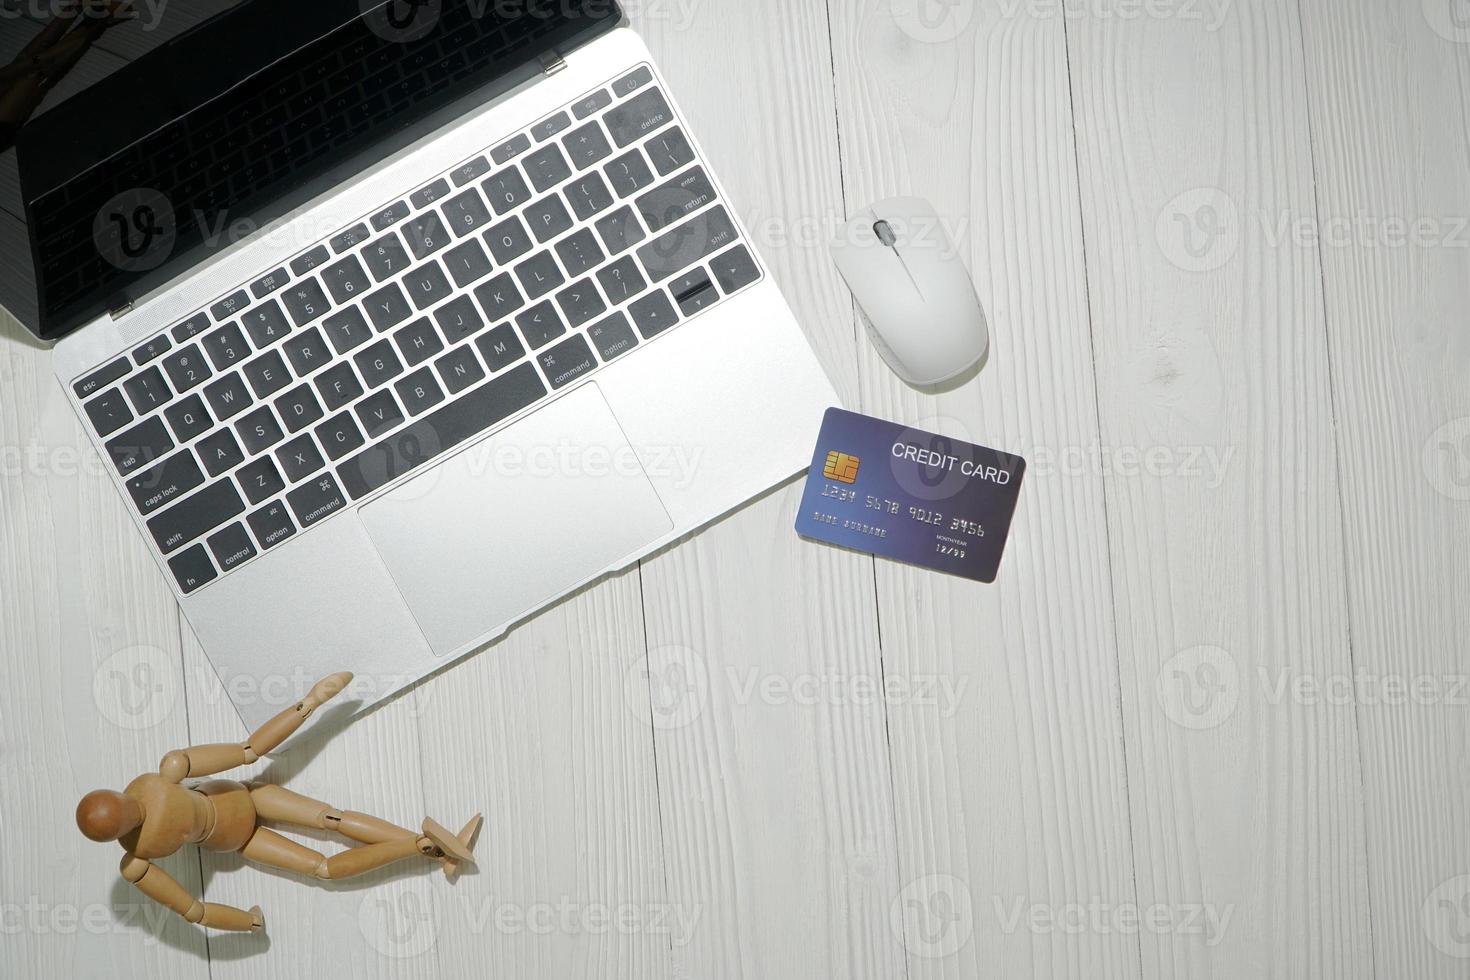 vista dall'alto del laptop con carta di credito su una superficie bianca foto